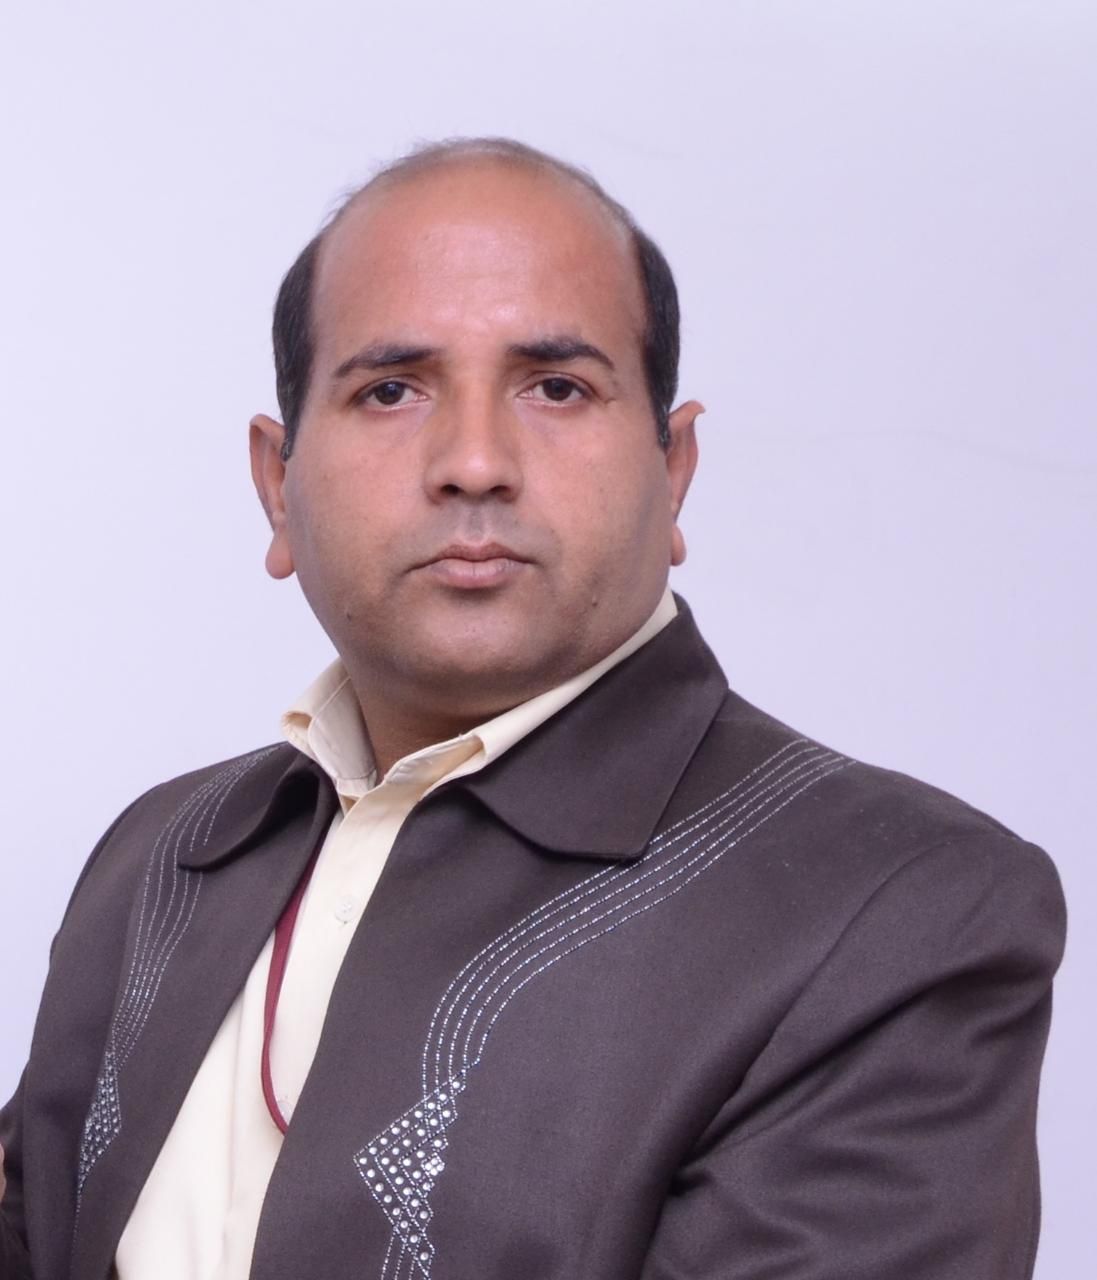 सैफई : सुघर सिंह पत्रकार  को फर्जी फंसाए जाने की जांच करेंगे एस पी साउथ कानपुर